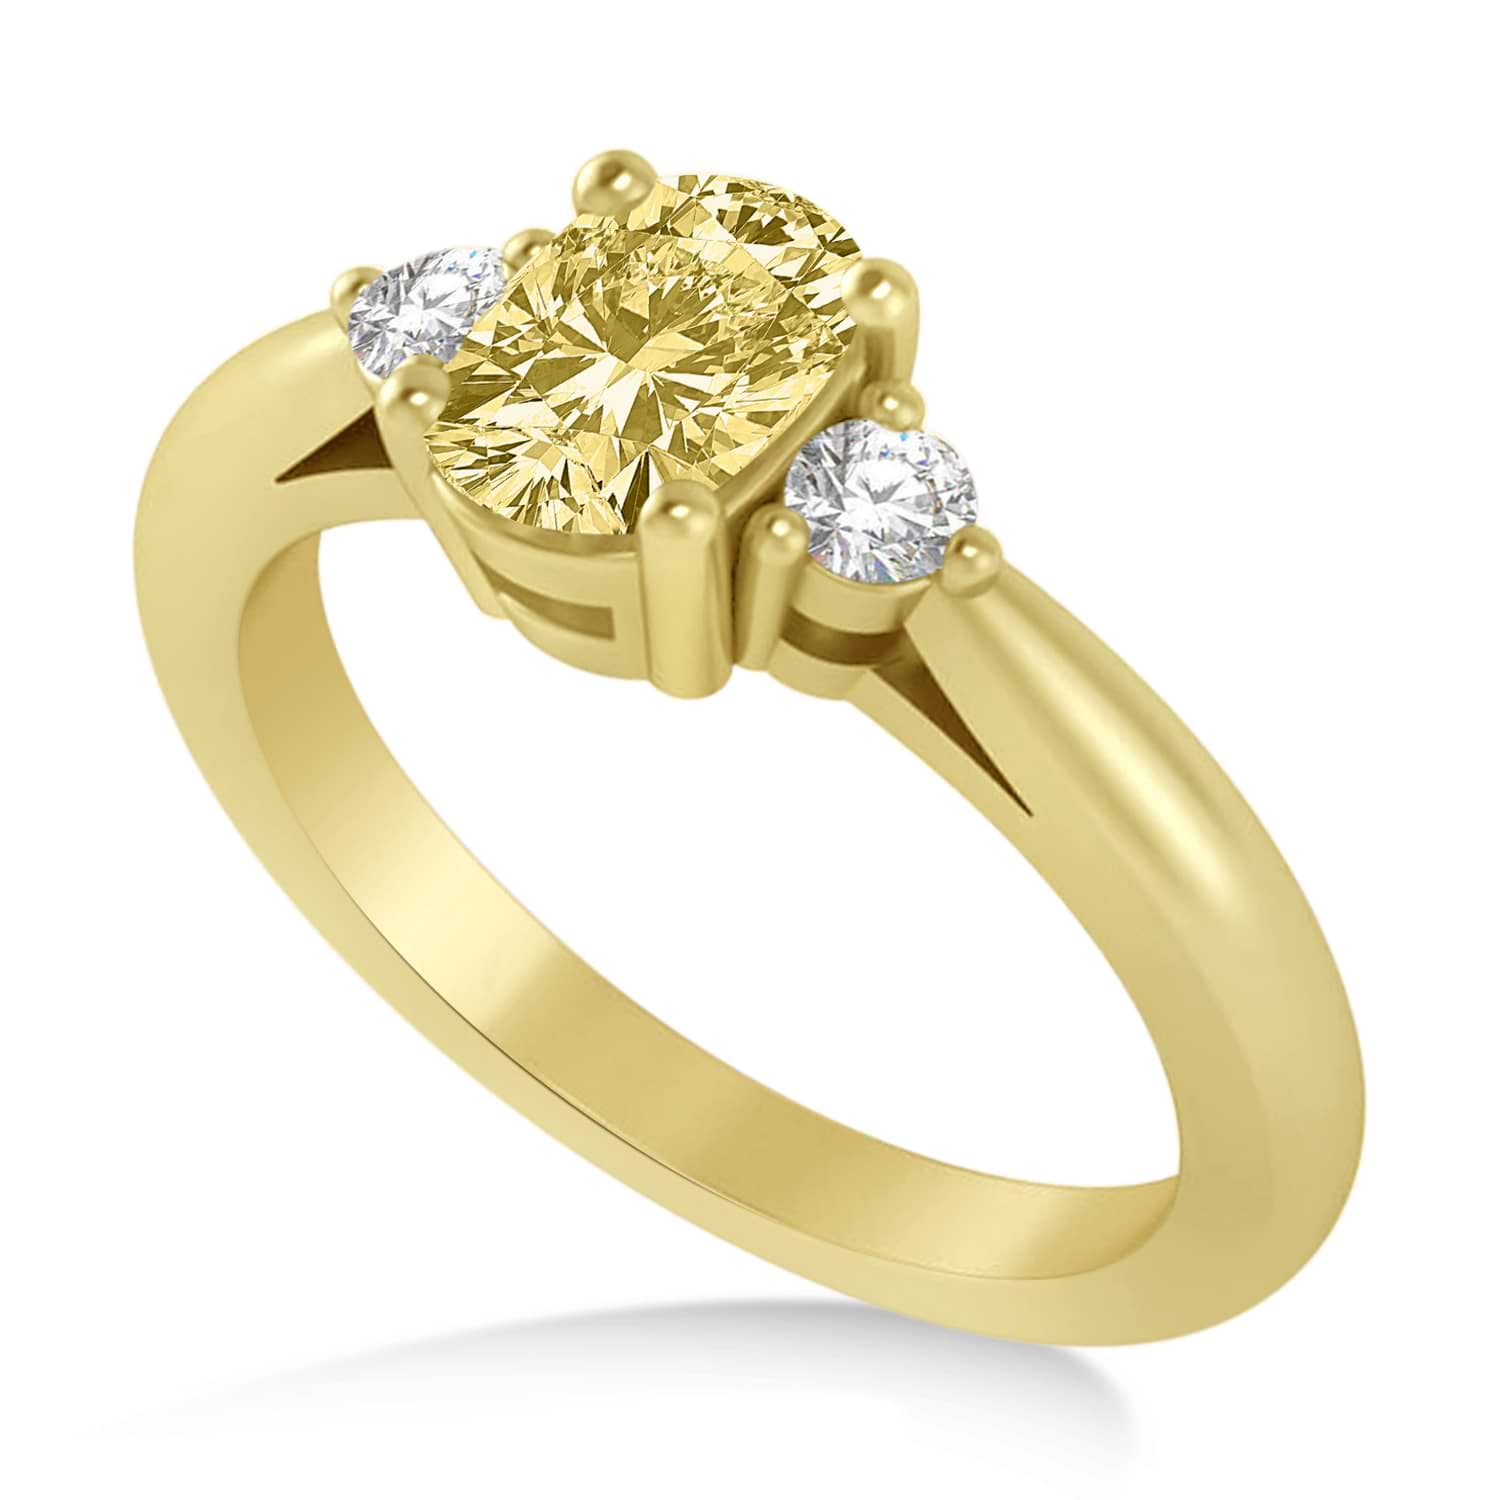 Cushion Yellow & White Diamond Three-Stone Engagement Ring 14k Yellow Gold (1.14ct)